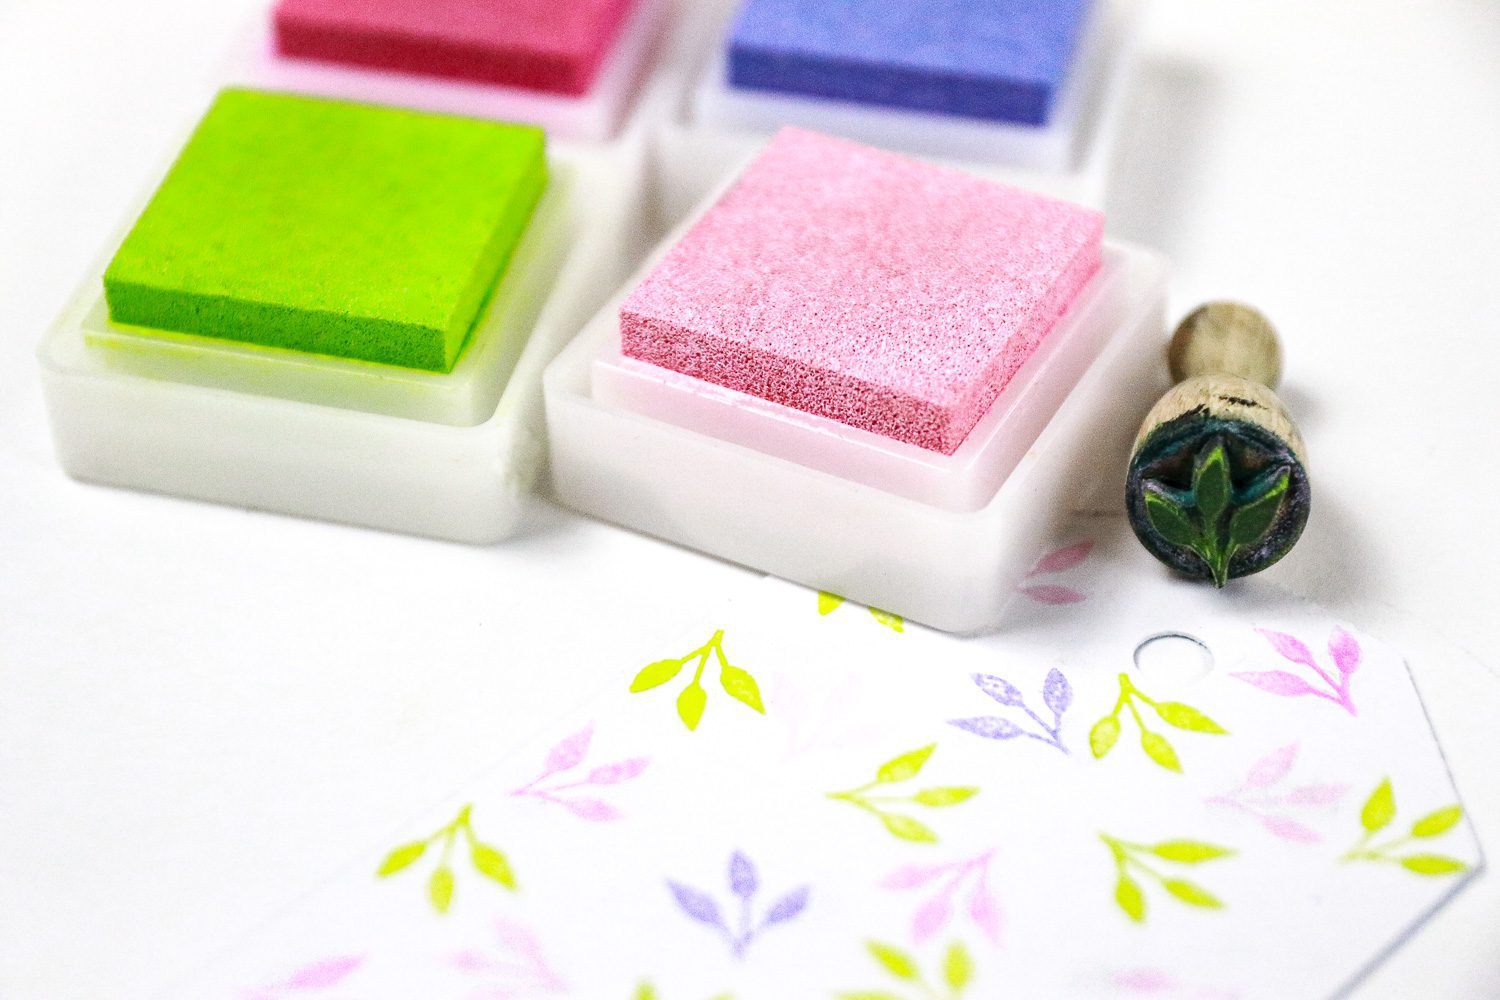 Shades of spring – Stempelkissen Set Frühlingsfarben pink, lila und grün von VersaColor